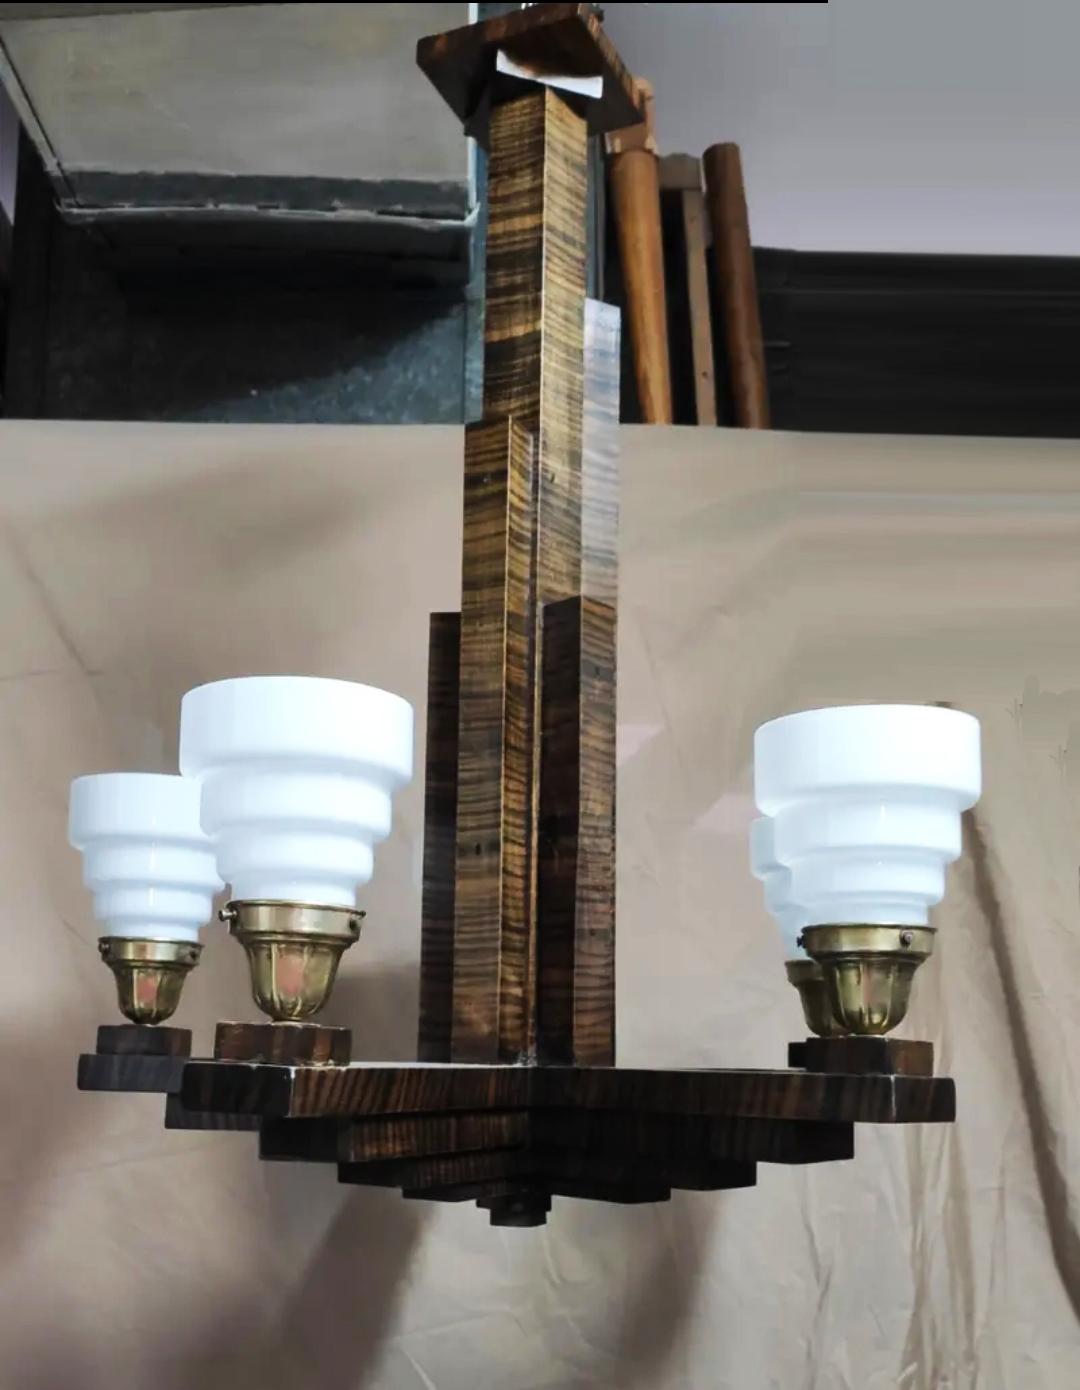 Spektakulär und außergewöhnlich  Lampe im reinsten Art Deco Skyscraper-Stil, 1930er Jahre.

 Holz  Madagaskar-Ebenholz Coromandel oder ähnlich, mit Tulpen
Messing und Opalglas

Die Lampe entstand zu Beginn des 20. Jahrhunderts, als der Mensch darum